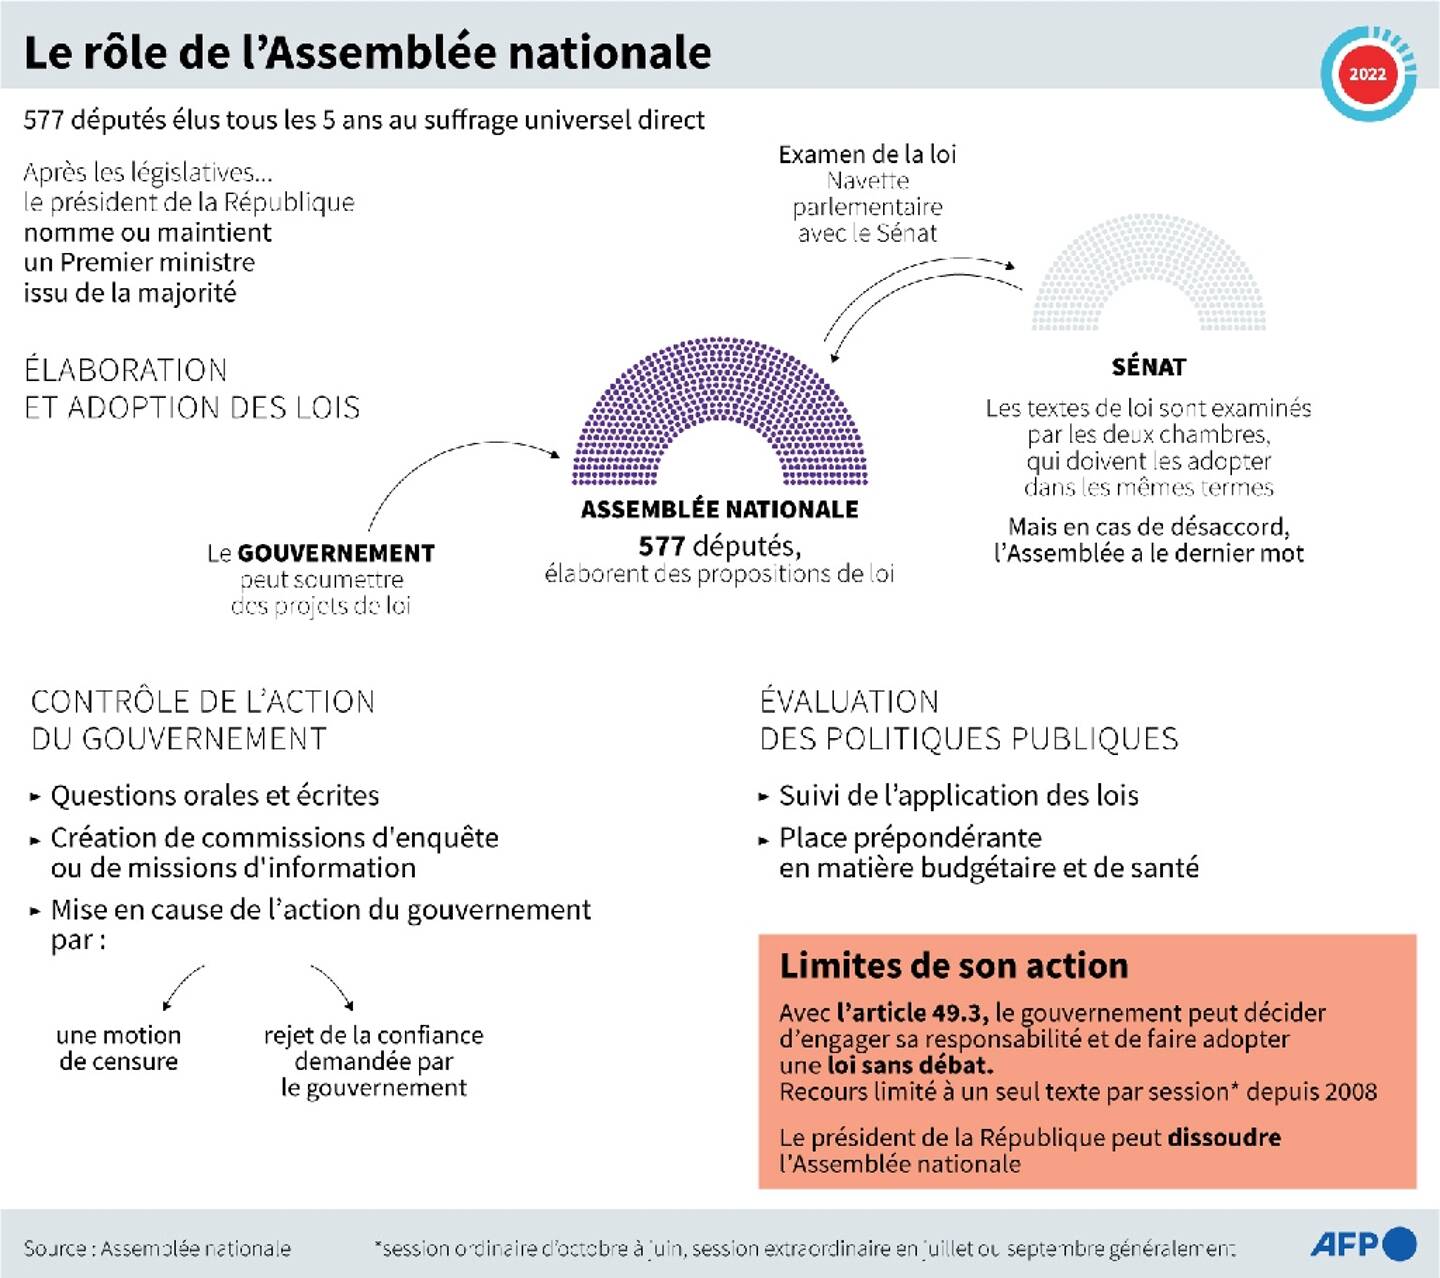 Le rôle de l'Assemblée nationale